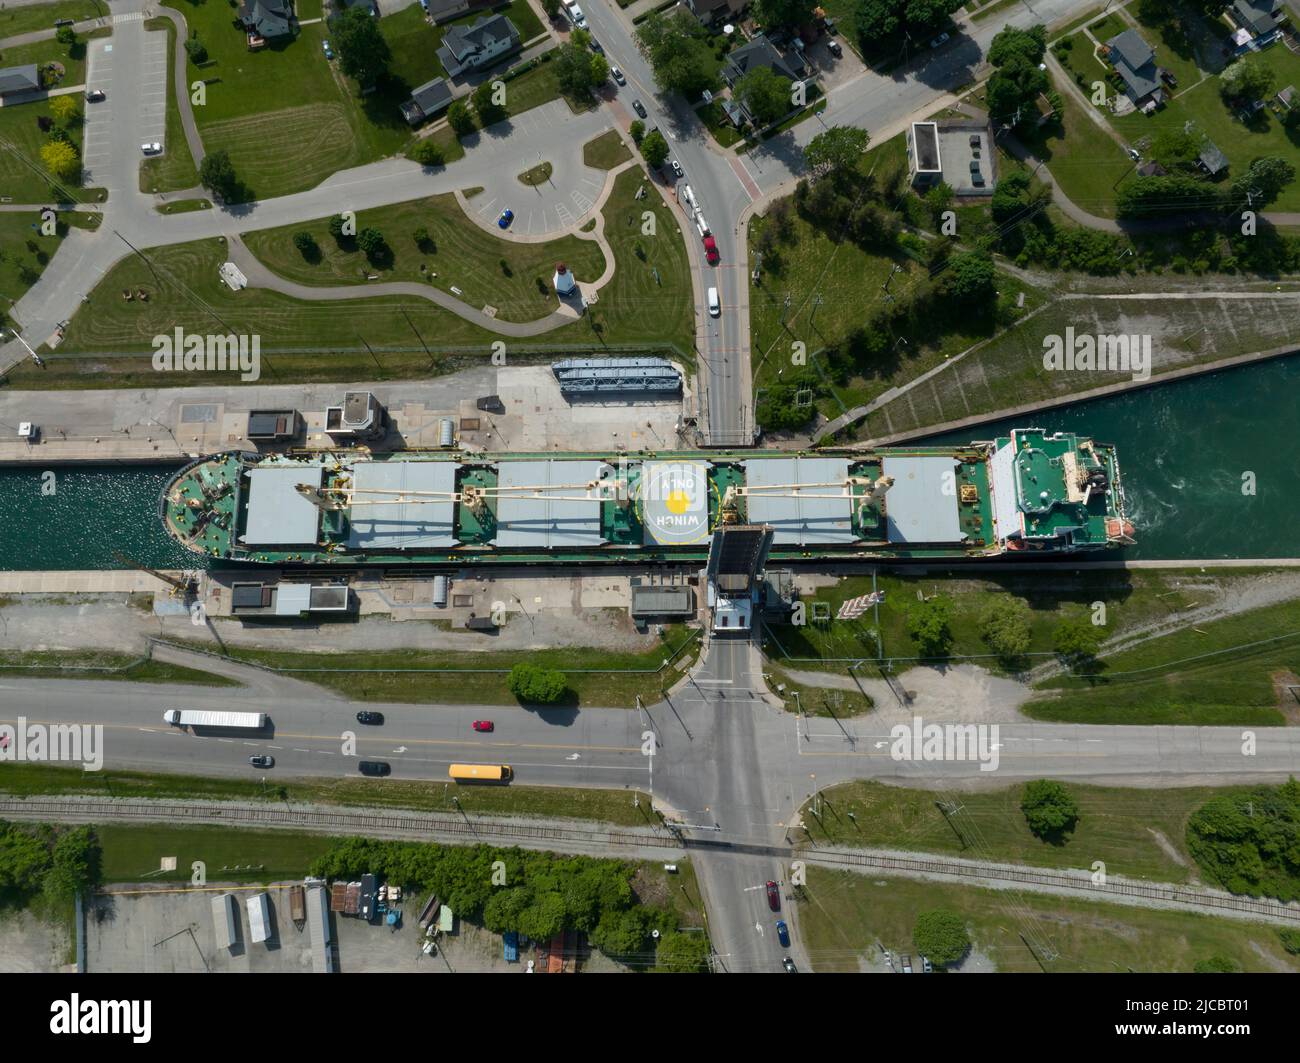 Una vista aérea directa desde arriba, de arriba hacia abajo, de un buque de carga a granel que pasa a través de un estrecho canal urbano en un puente levadizo que cruza durante el día. Foto de stock